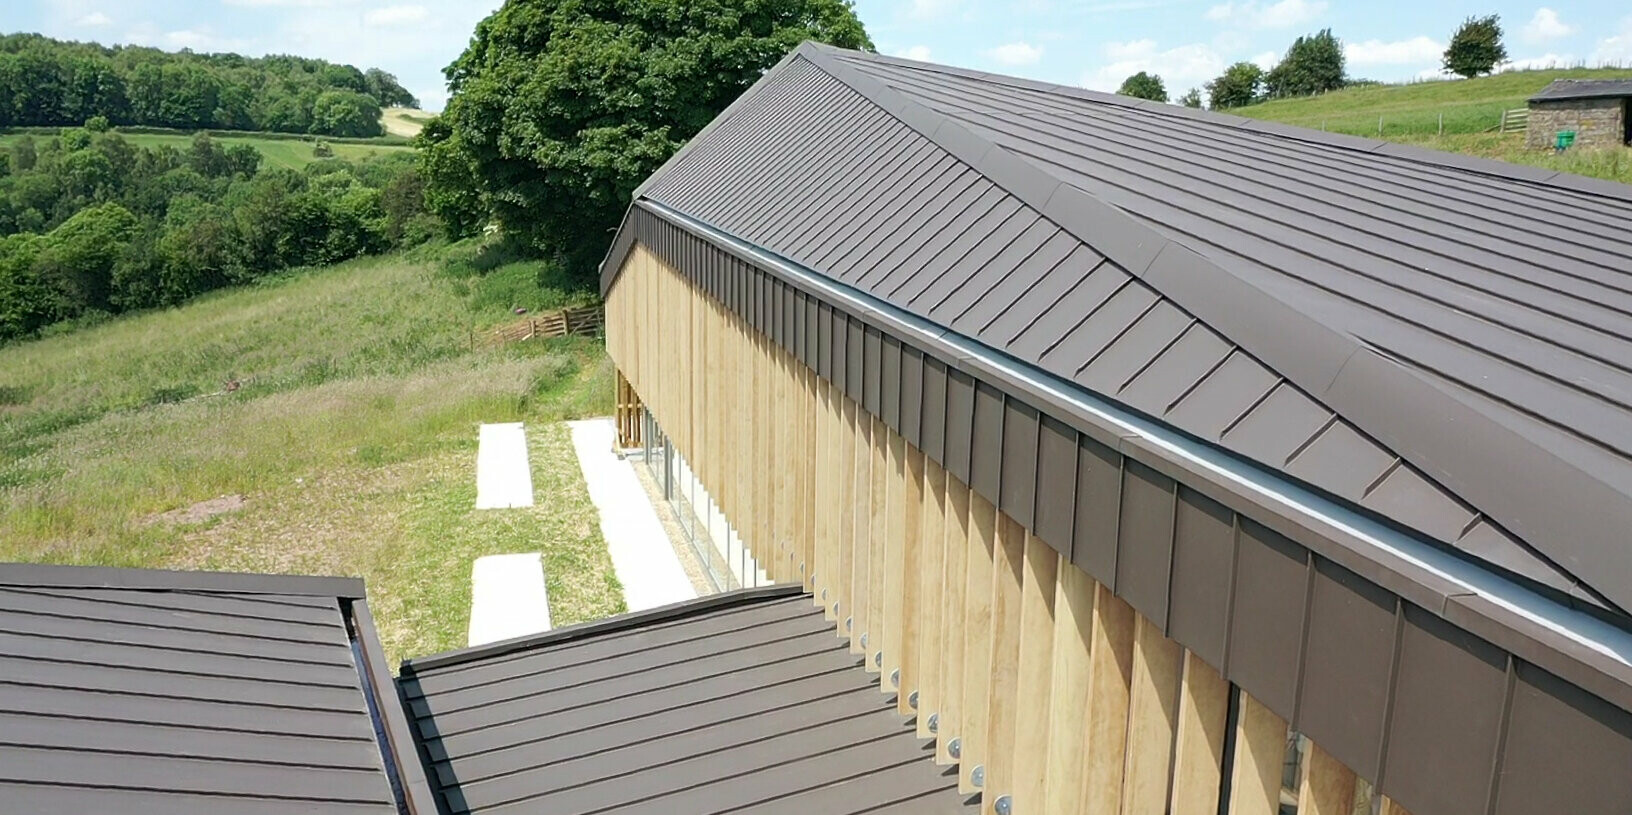 PREFALZ in P.10 Braun auf einem Langhaus mit spezieller Dachform in Derbyshire